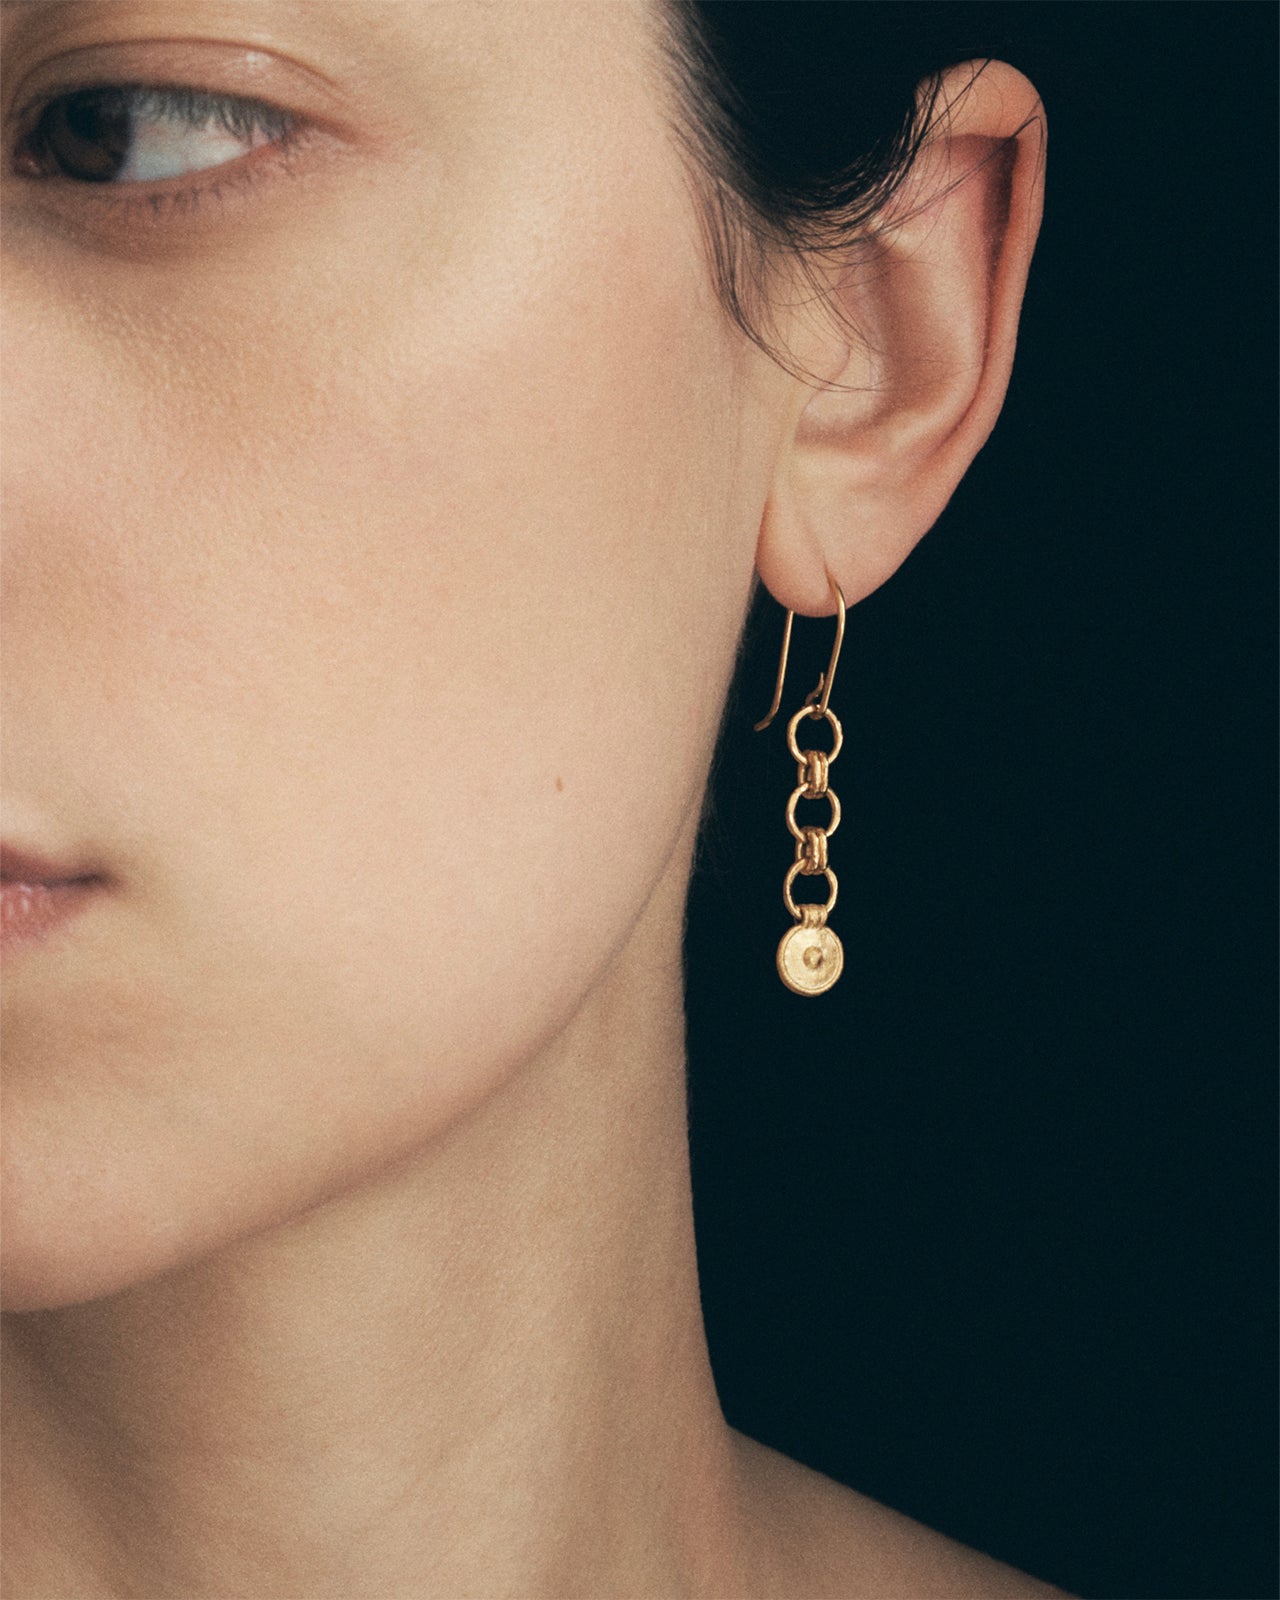 Share 75+ argos gold earrings